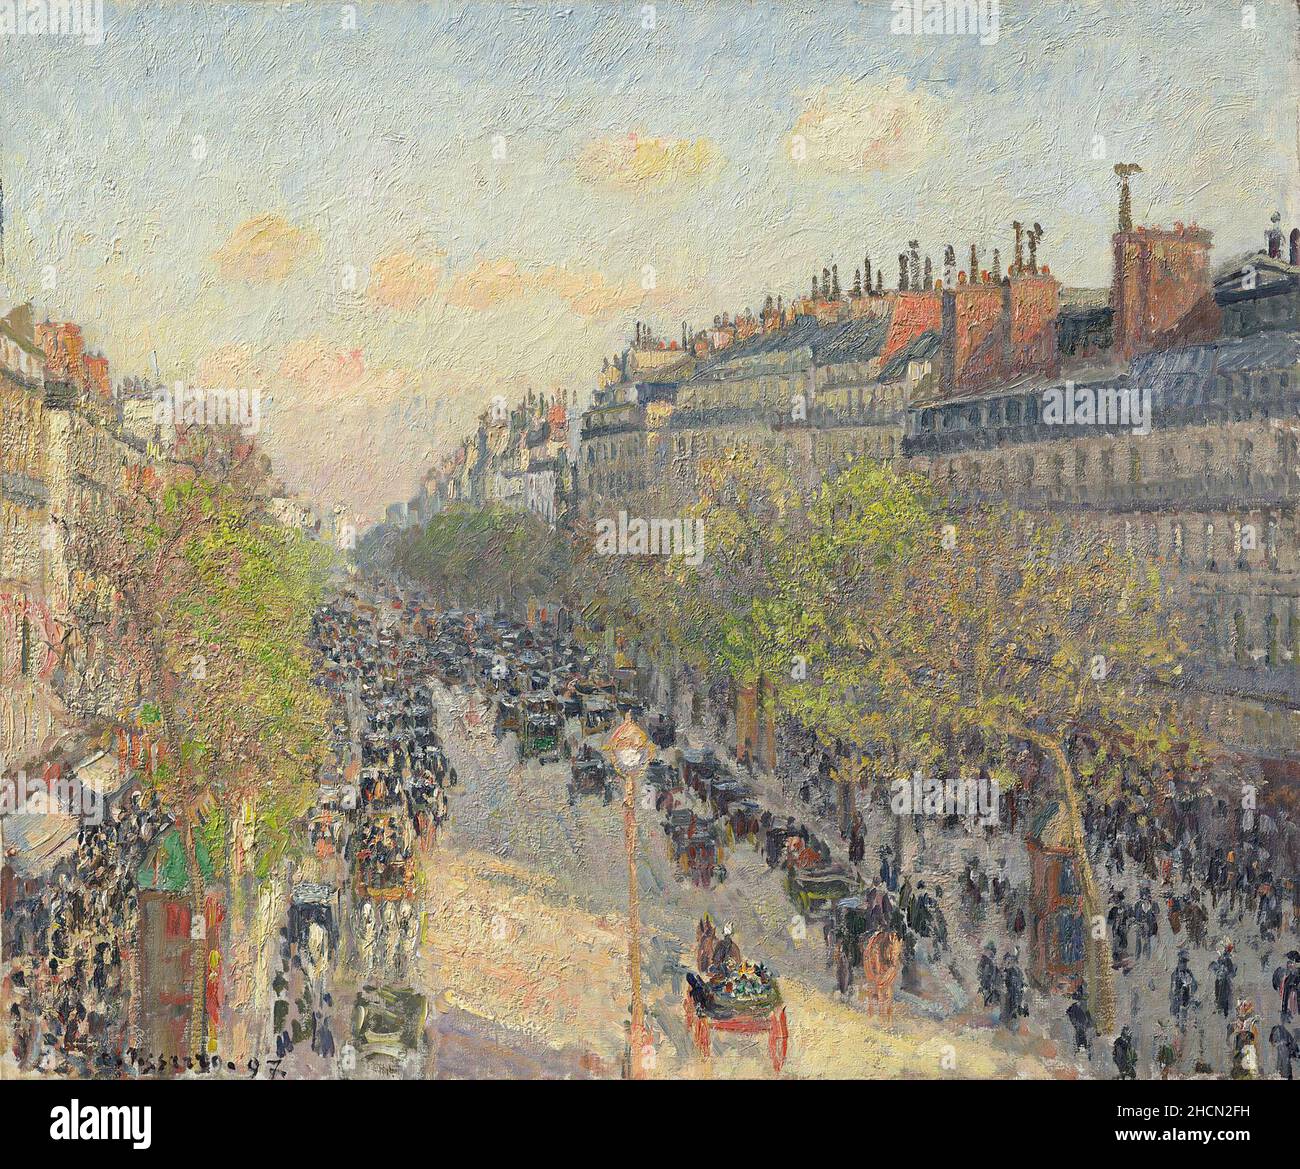 Boulevard Montmartre, crépuscule par le peintre impressionniste/post-impressionniste français Camille Pisarro Banque D'Images